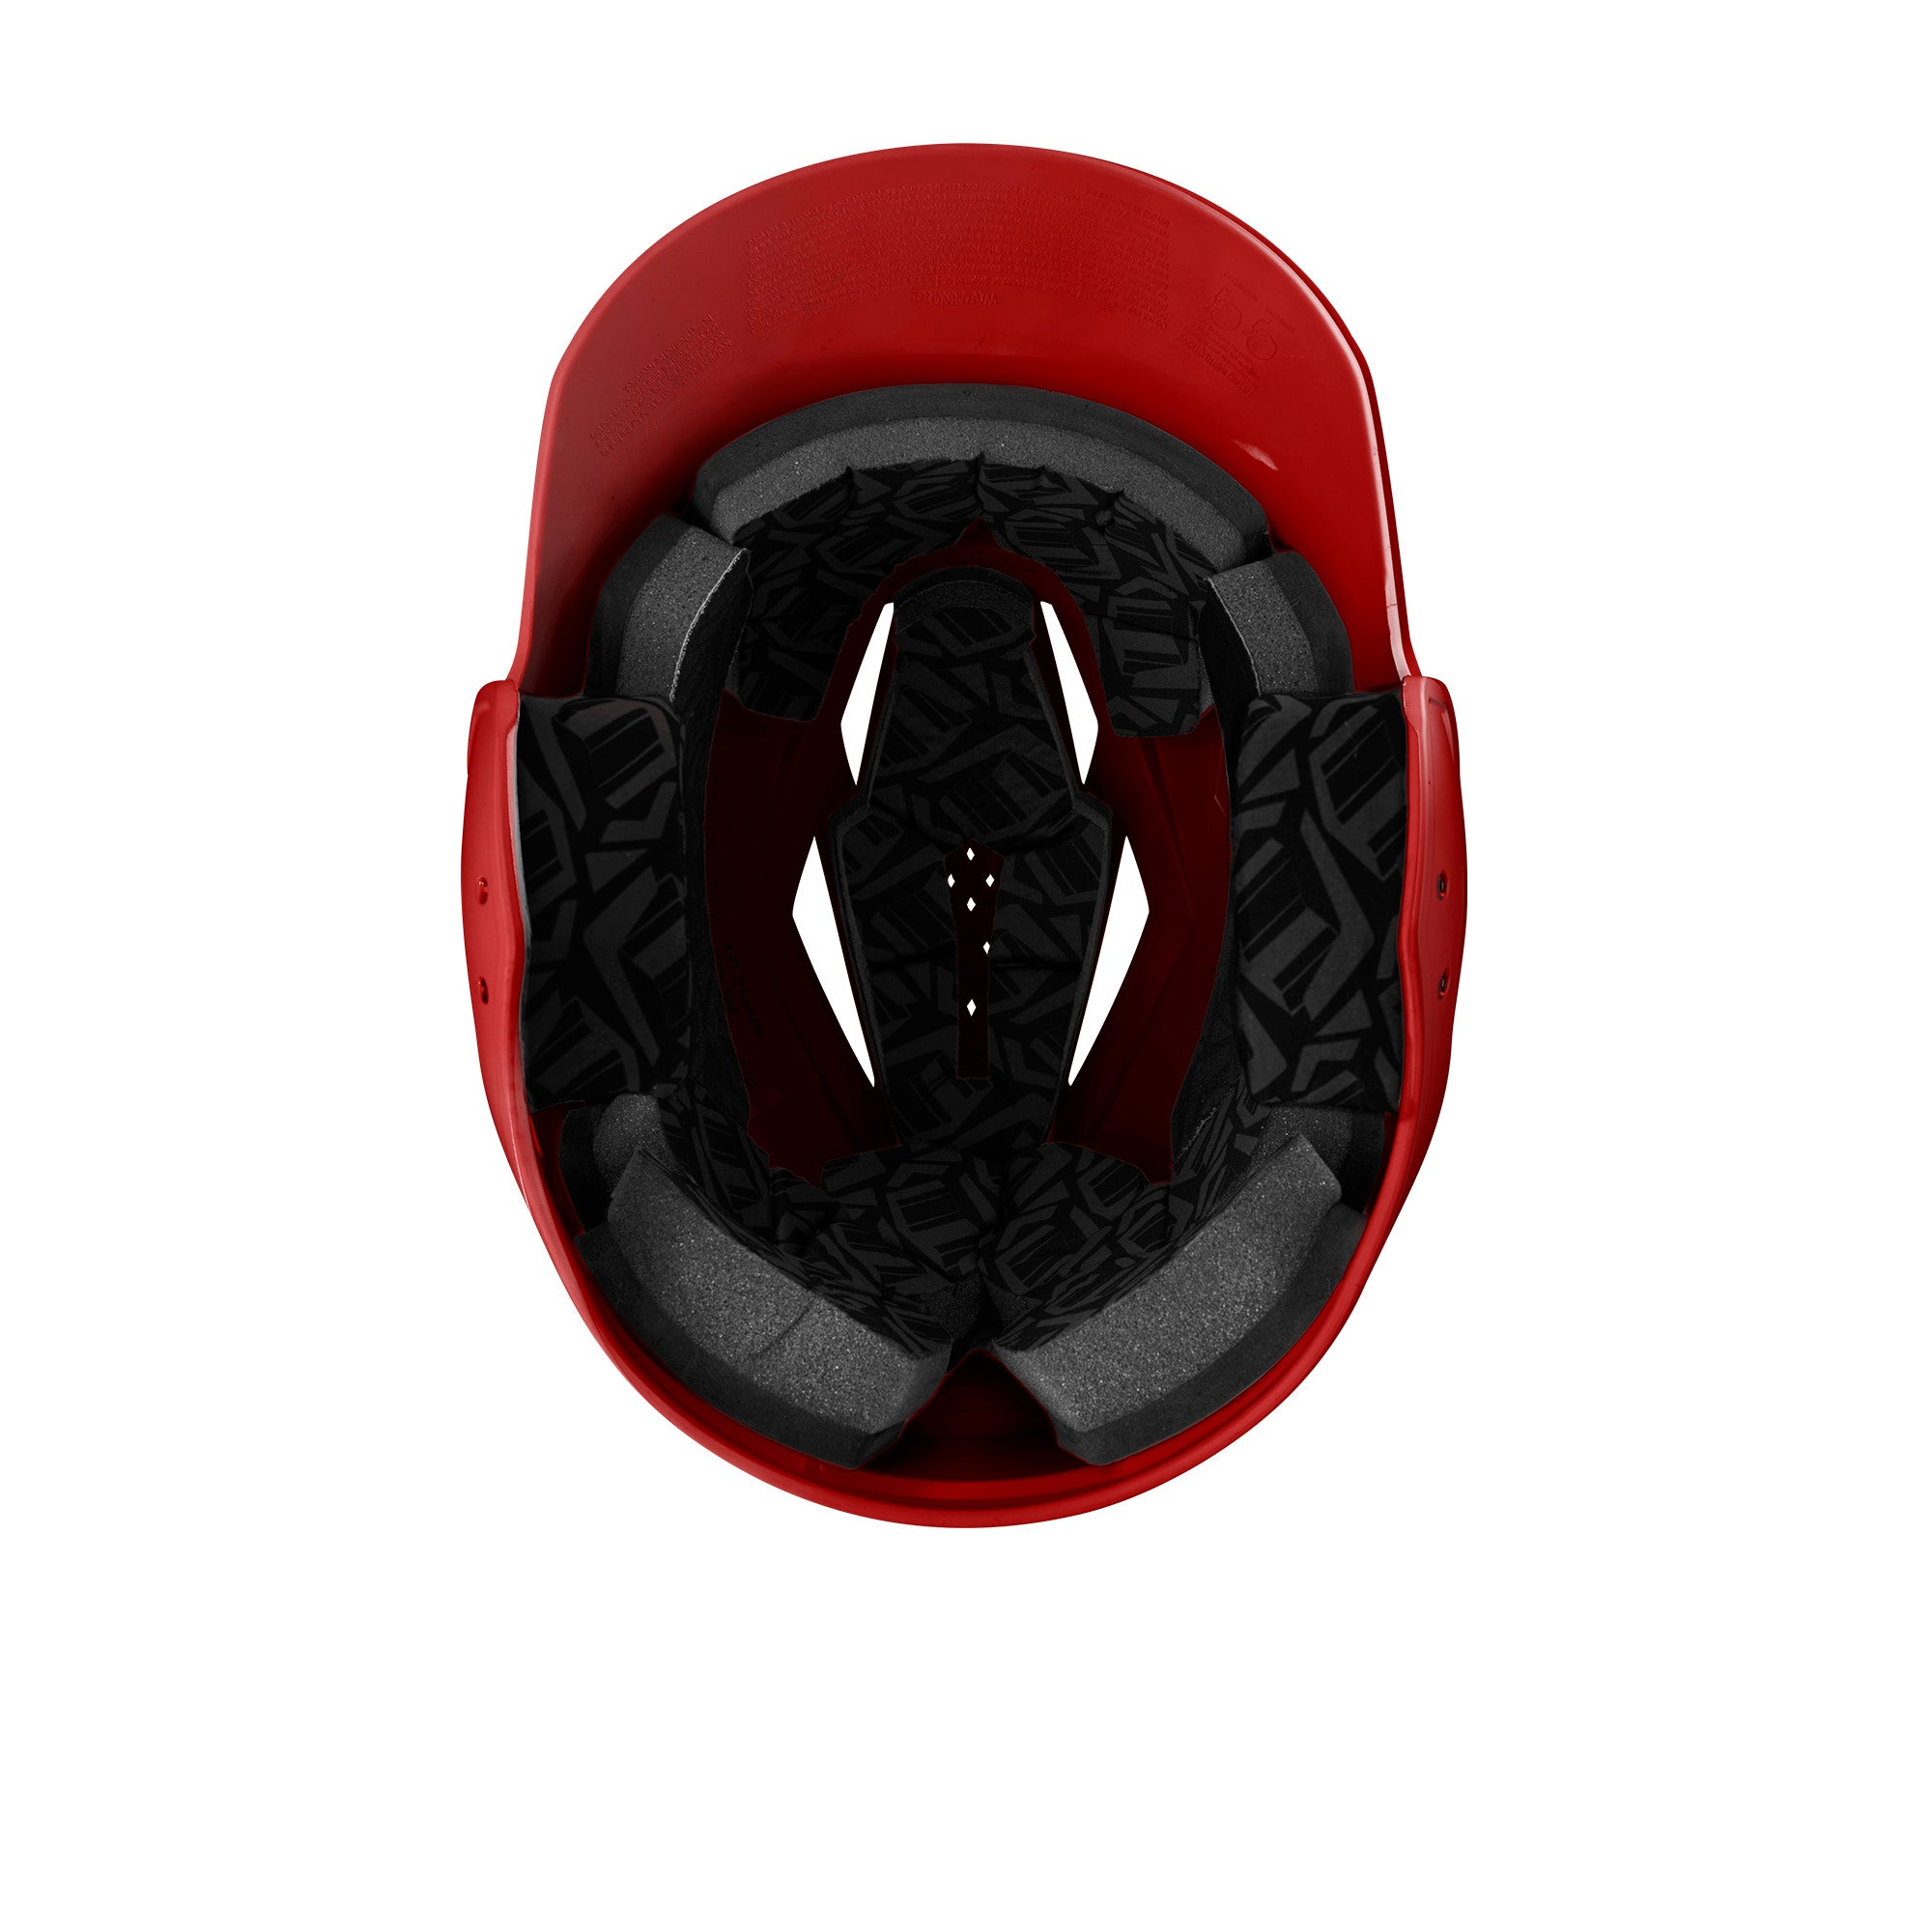 Evoshield XVT 2.0 Glossy Batting Helmet Scarlet